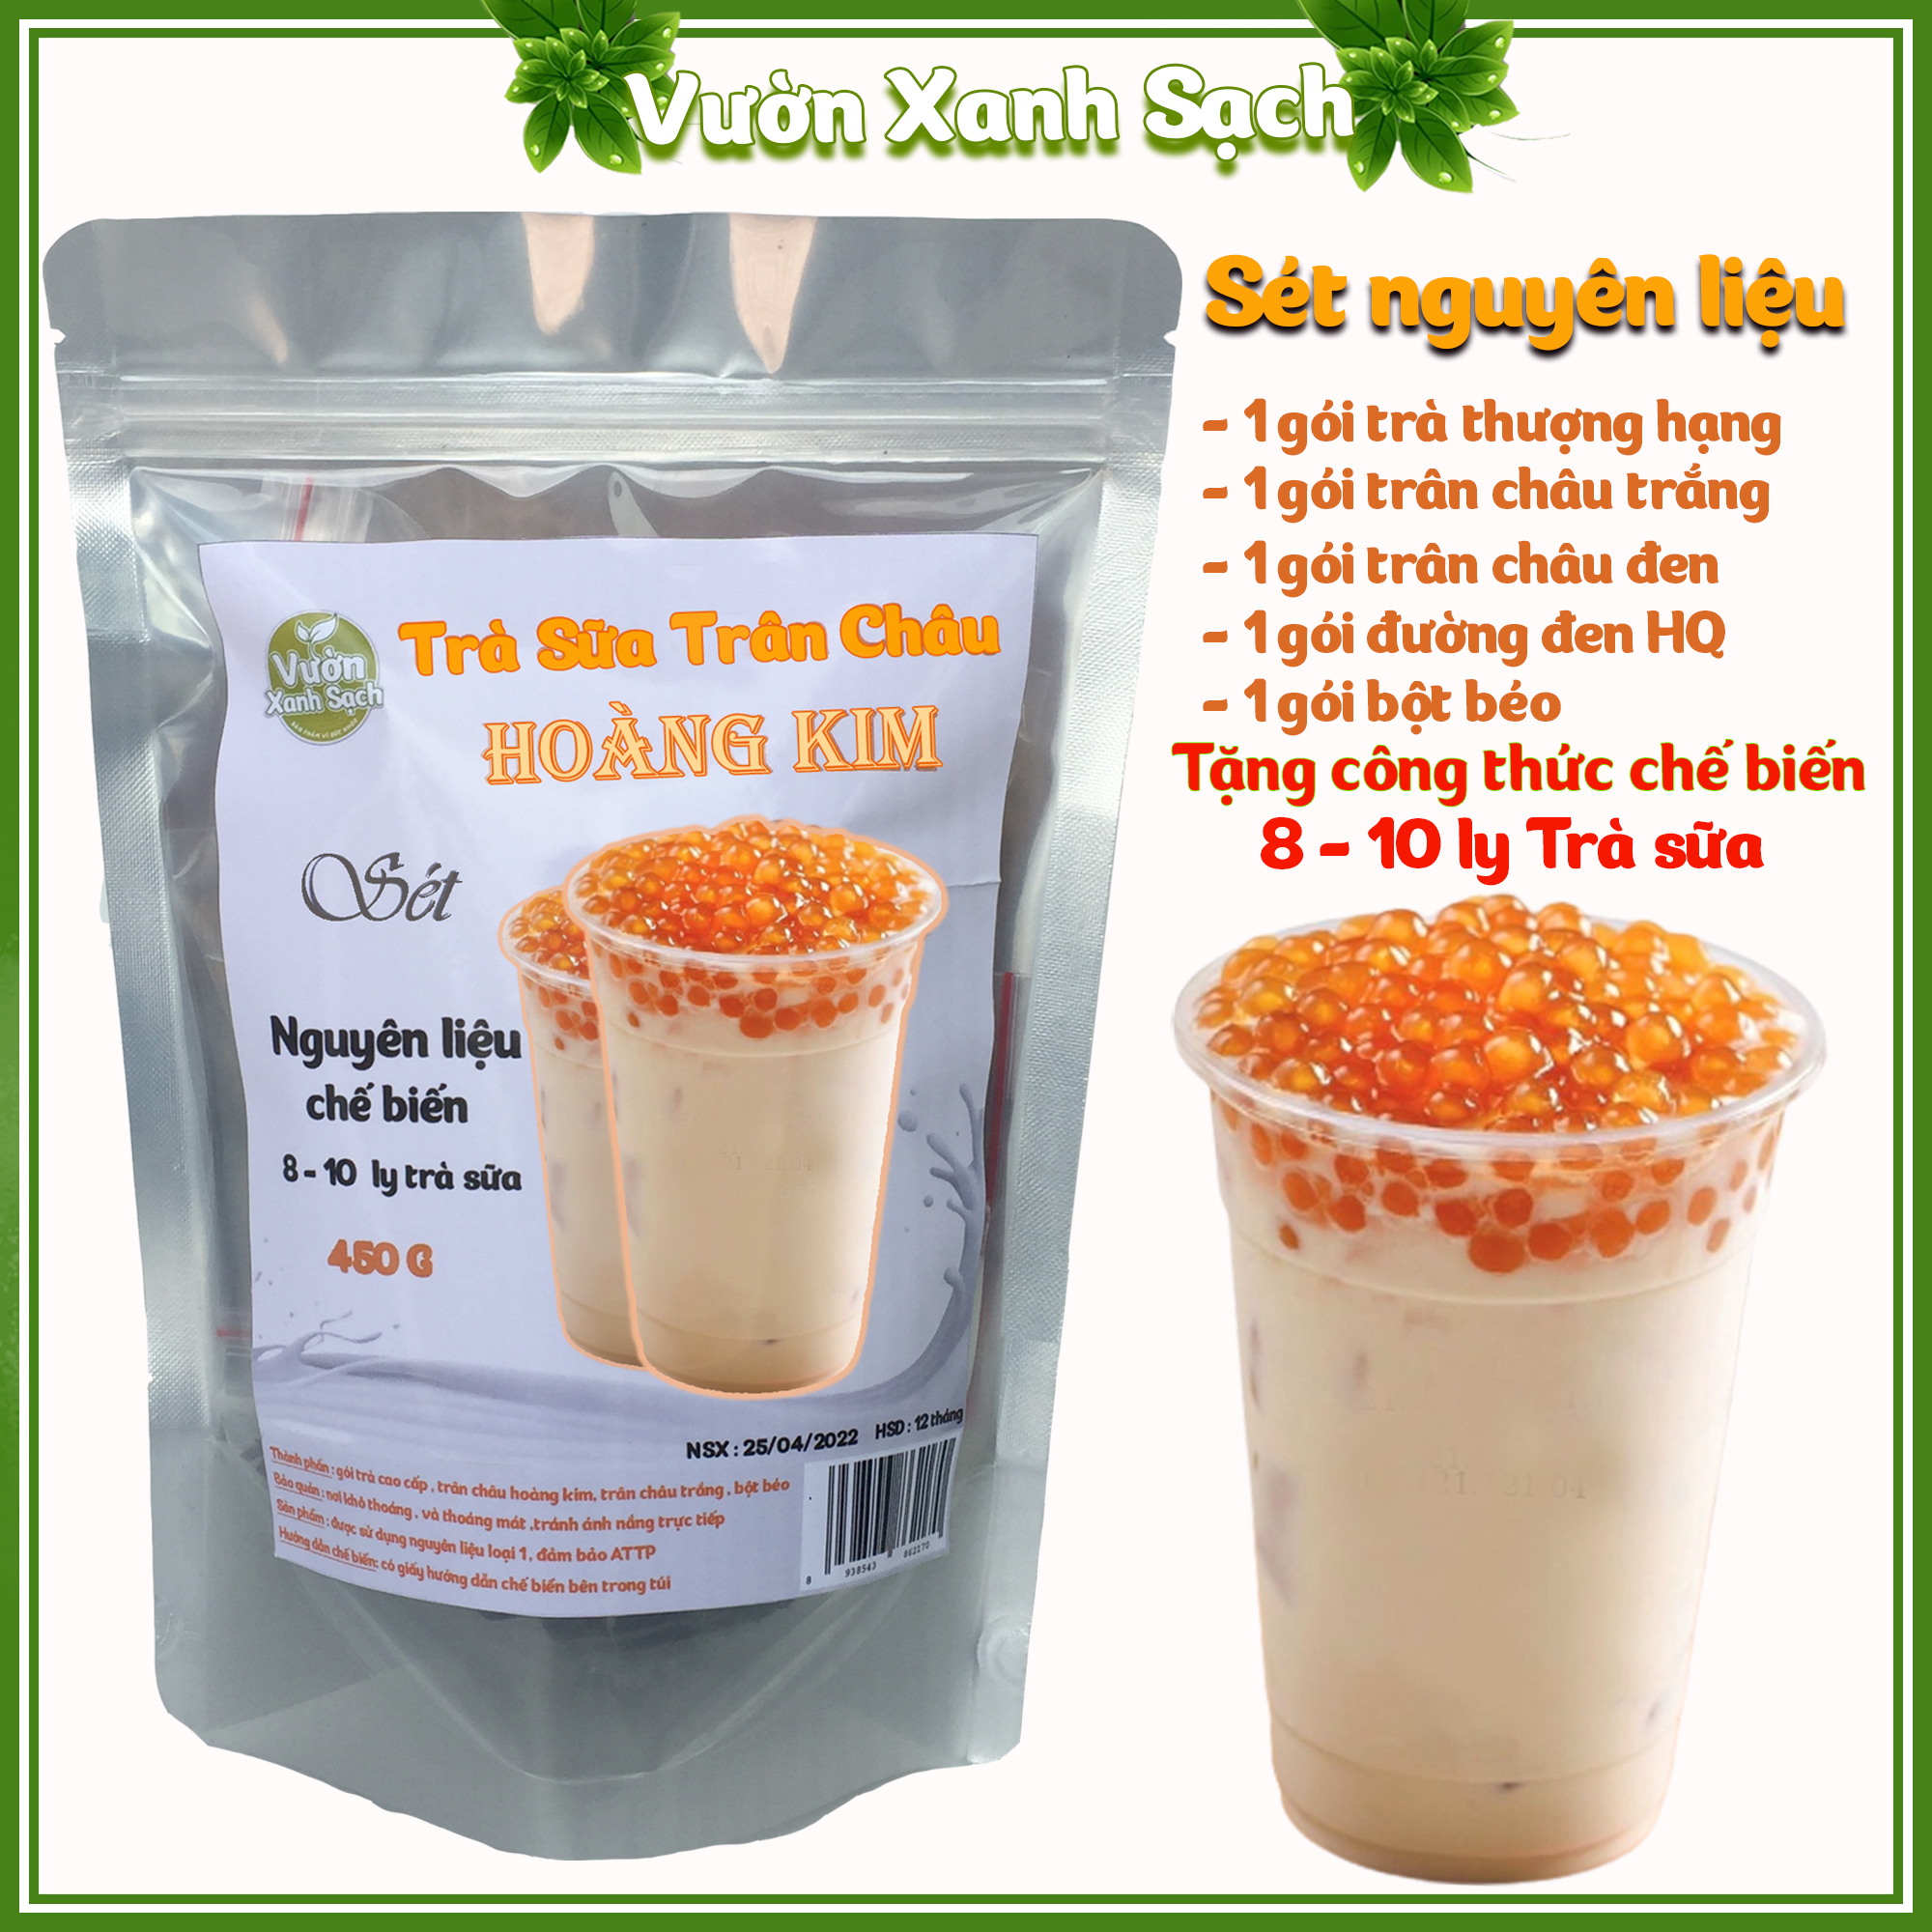 Trà sữa trân châu Hoàng Kim / Nguyên liệu pha chế trà sữa 10 - 12 ly trà sữa thơm ngon / Đồ ăn vặt / Vườn Xanh Sạch/Có hướng dẫn cách nấu